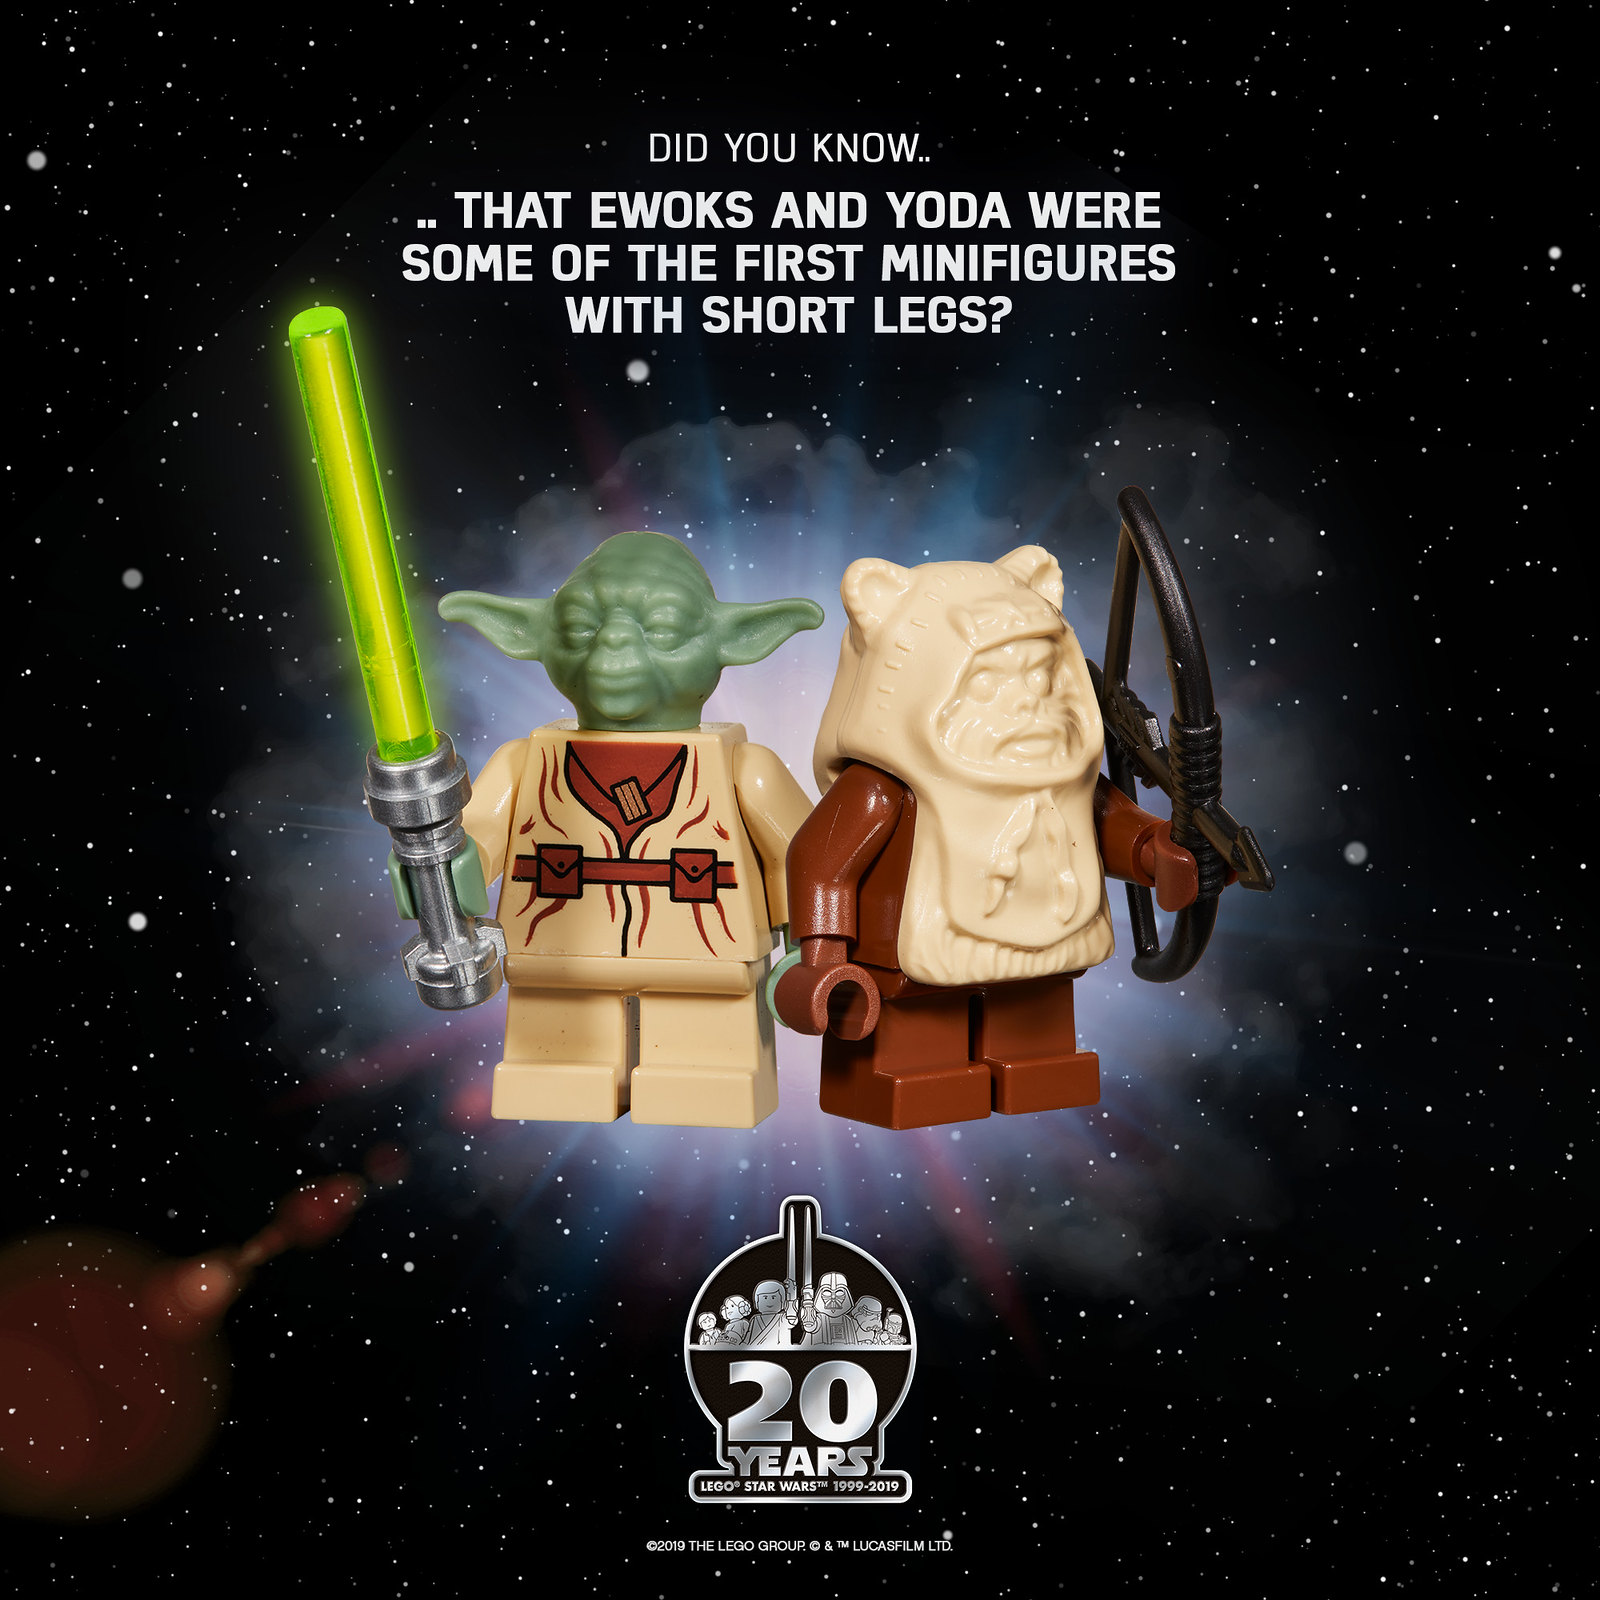 La Gamme Lego Star Wars Fete Ses 20 Ans Joyeux Anniversaire Brickonaute